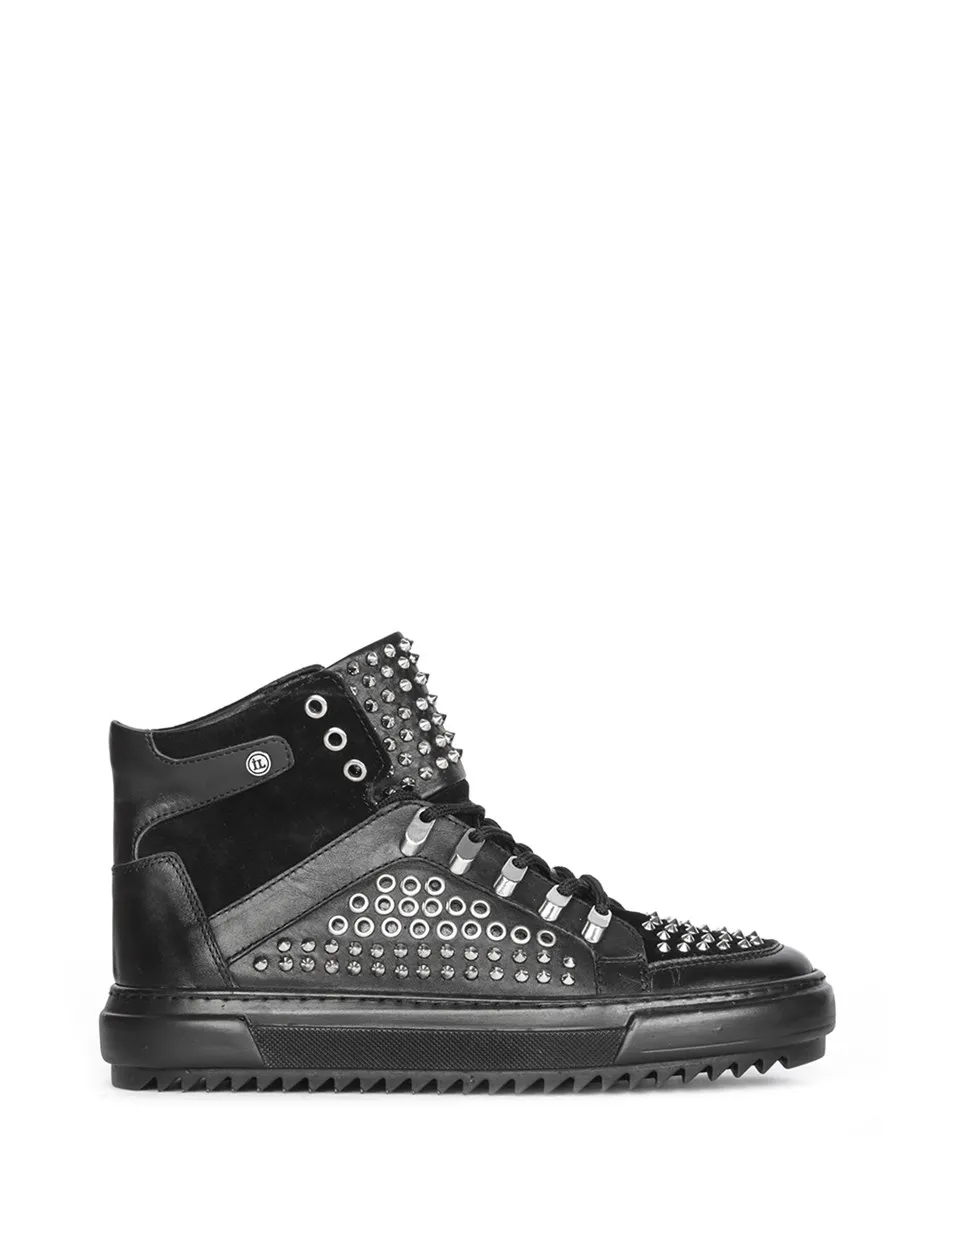 Ilvİ Bentley мужские ботинки из черной кожи | Обувь